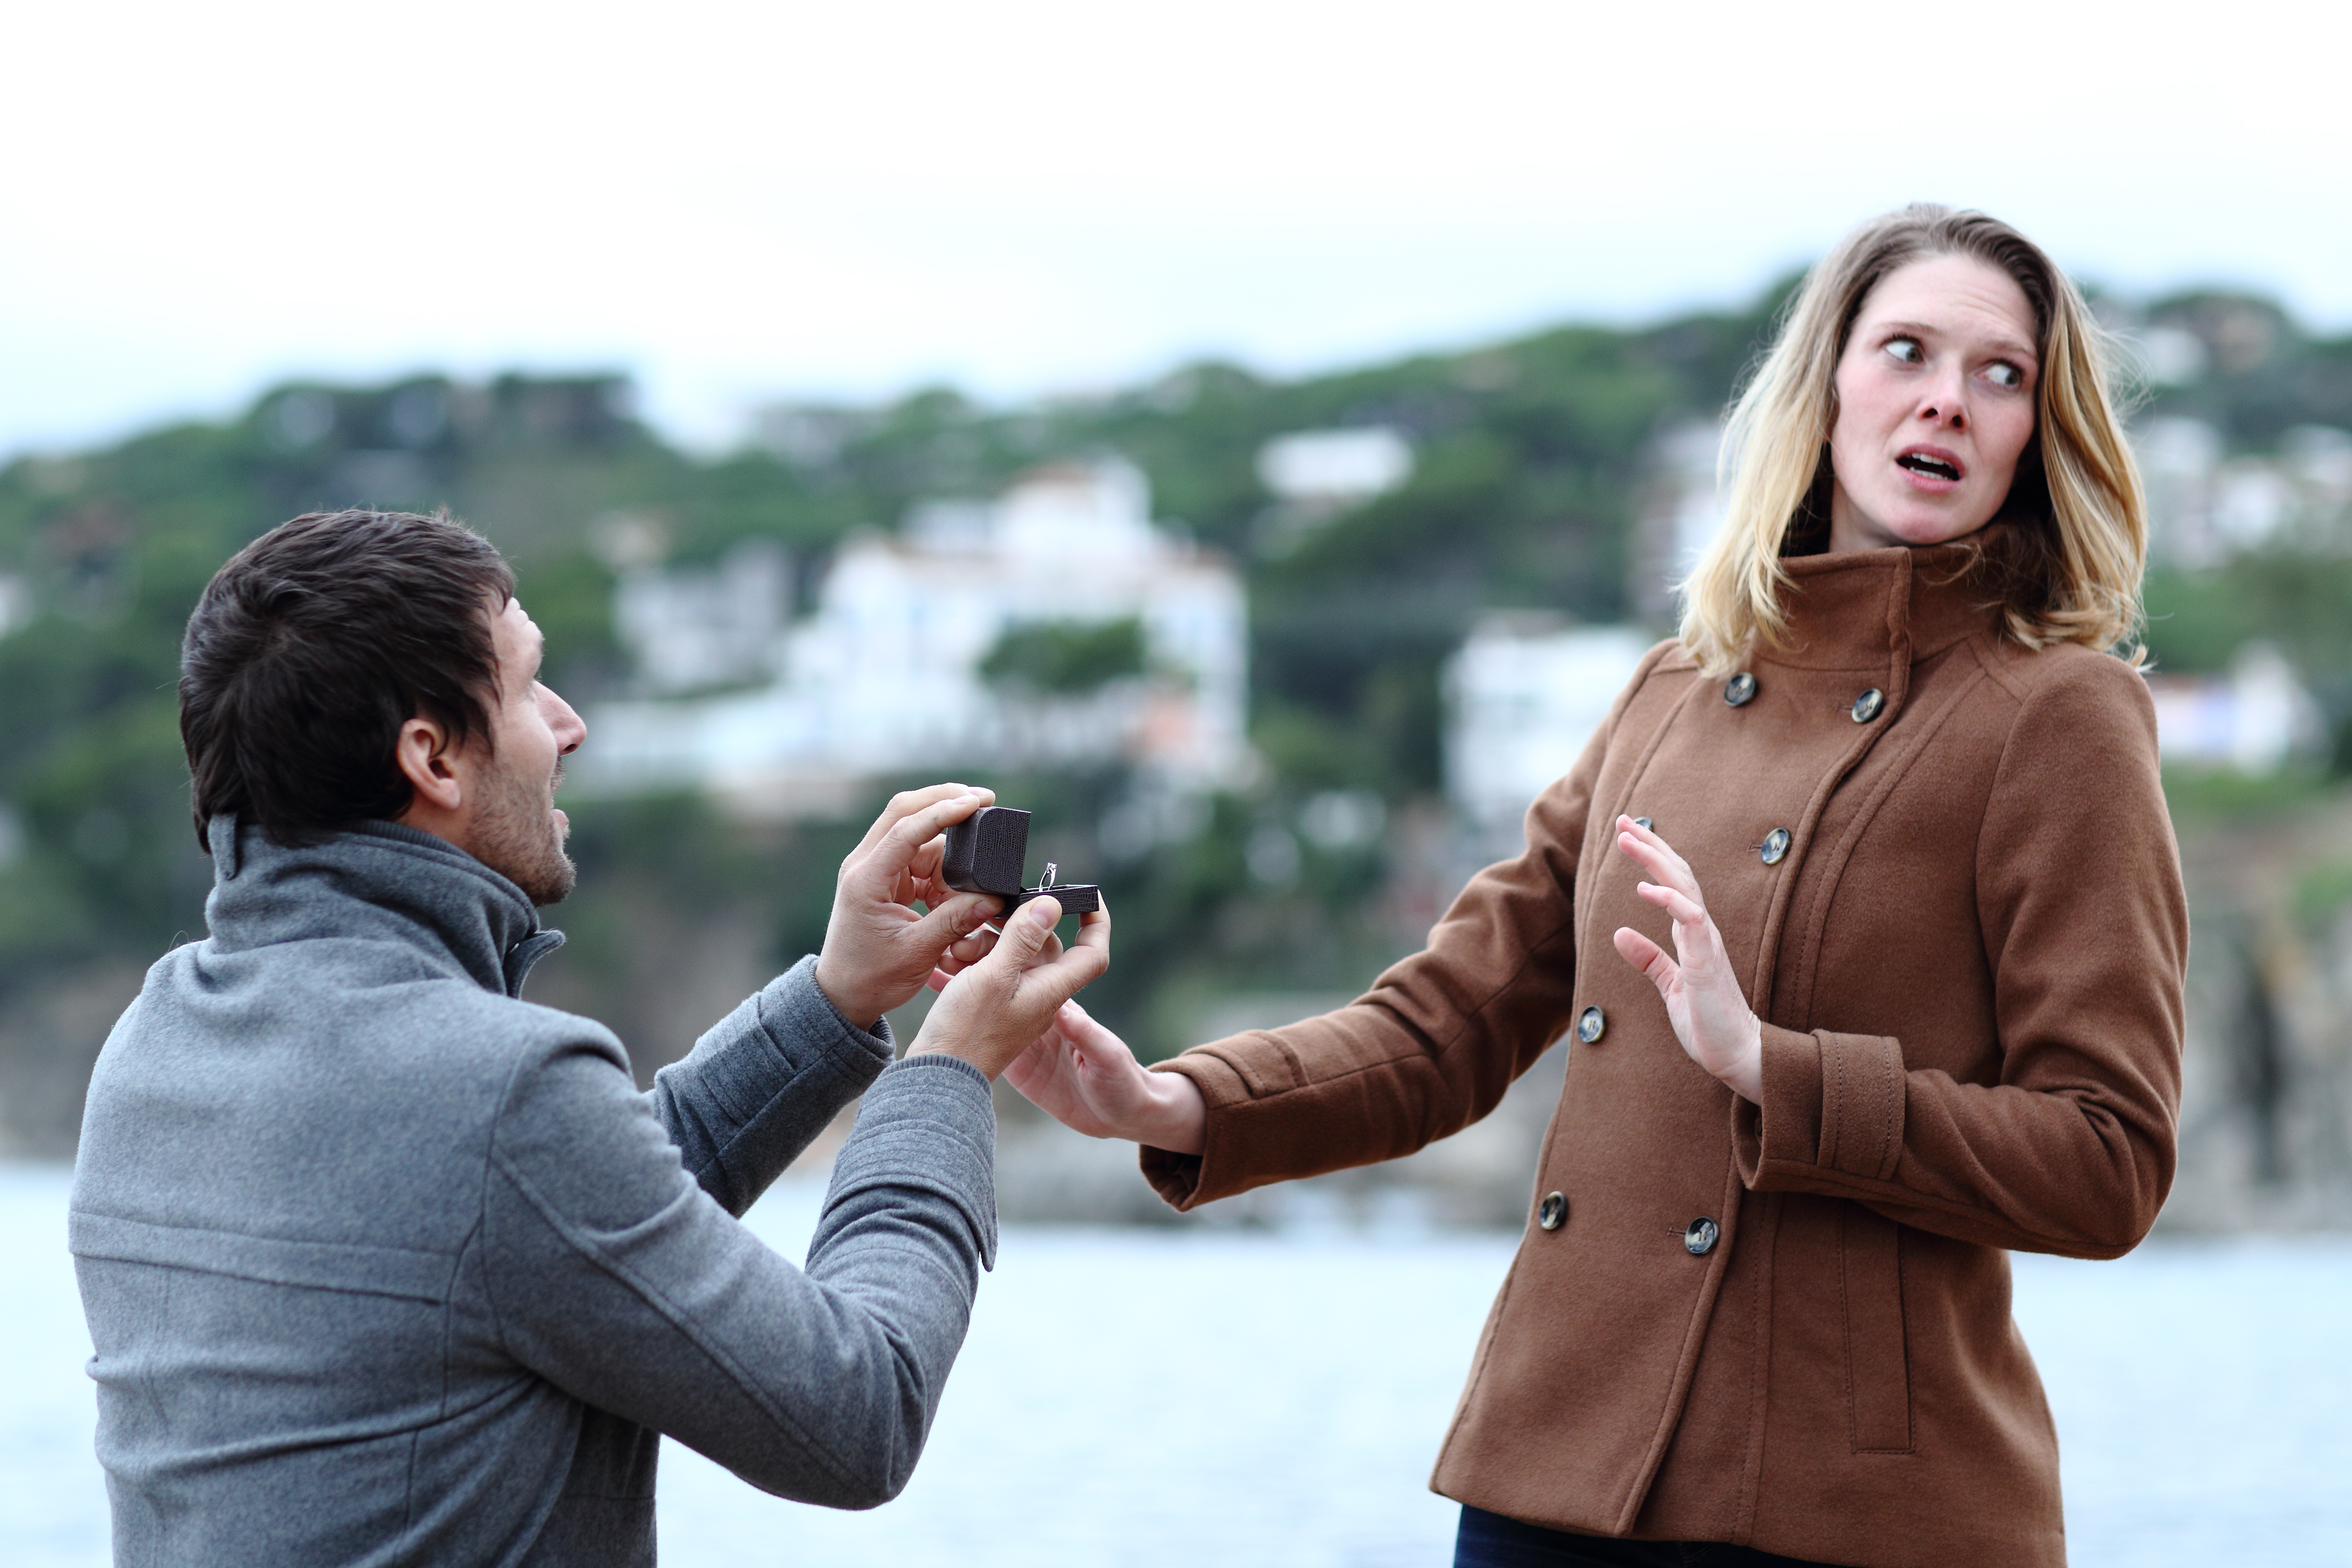 Femme choquée rejetant la proposition d'un homme | Source : Shutterstock